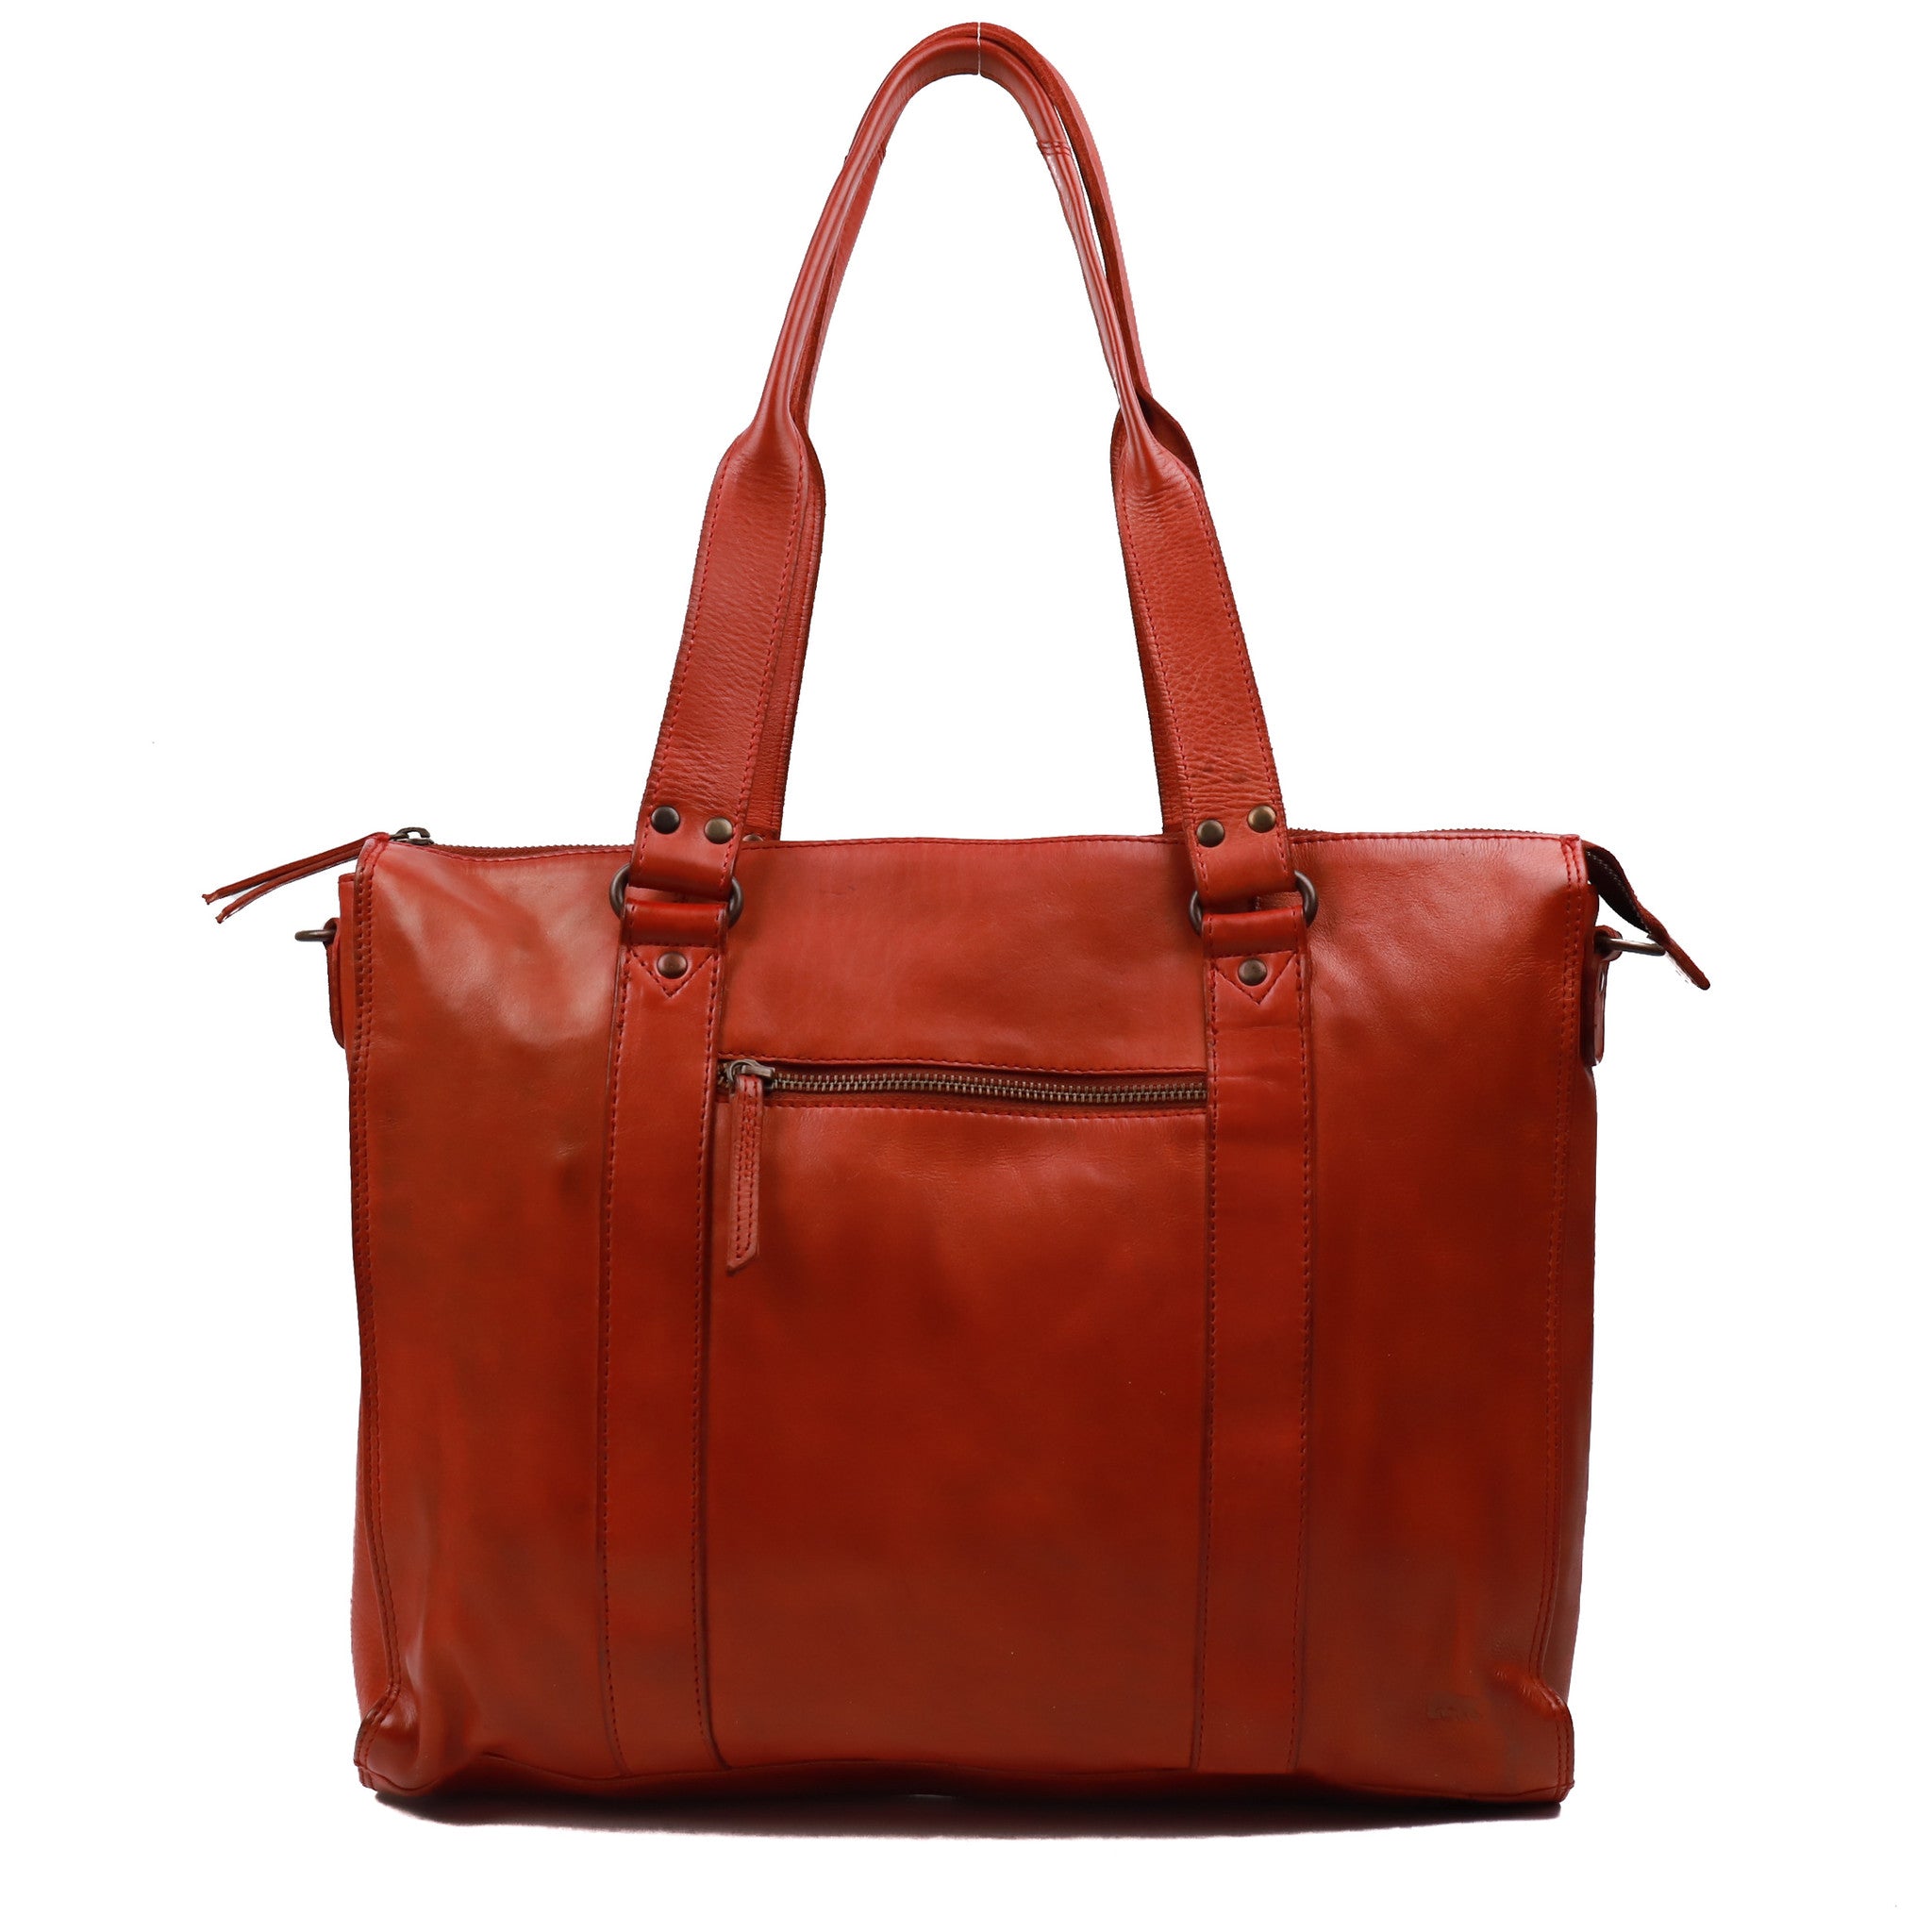 Hand/shoulder bag 'Mea' red - CL 35221